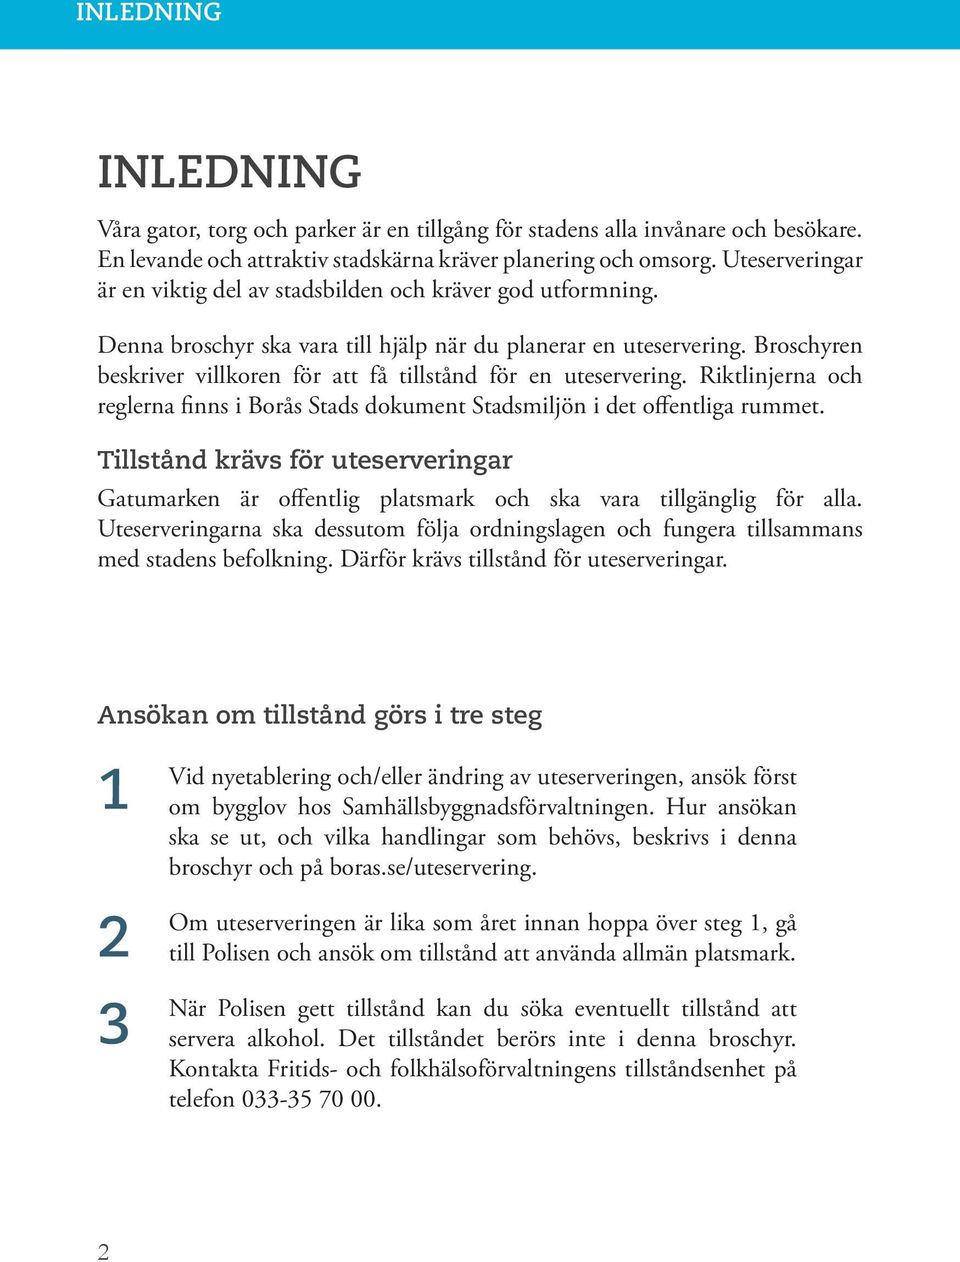 Broschyren beskriver villkoren för att få tillstånd för en uteservering. Riktlinjerna och reglerna finns i Borås Stads dokument Stadsmiljön i det offentliga rummet.